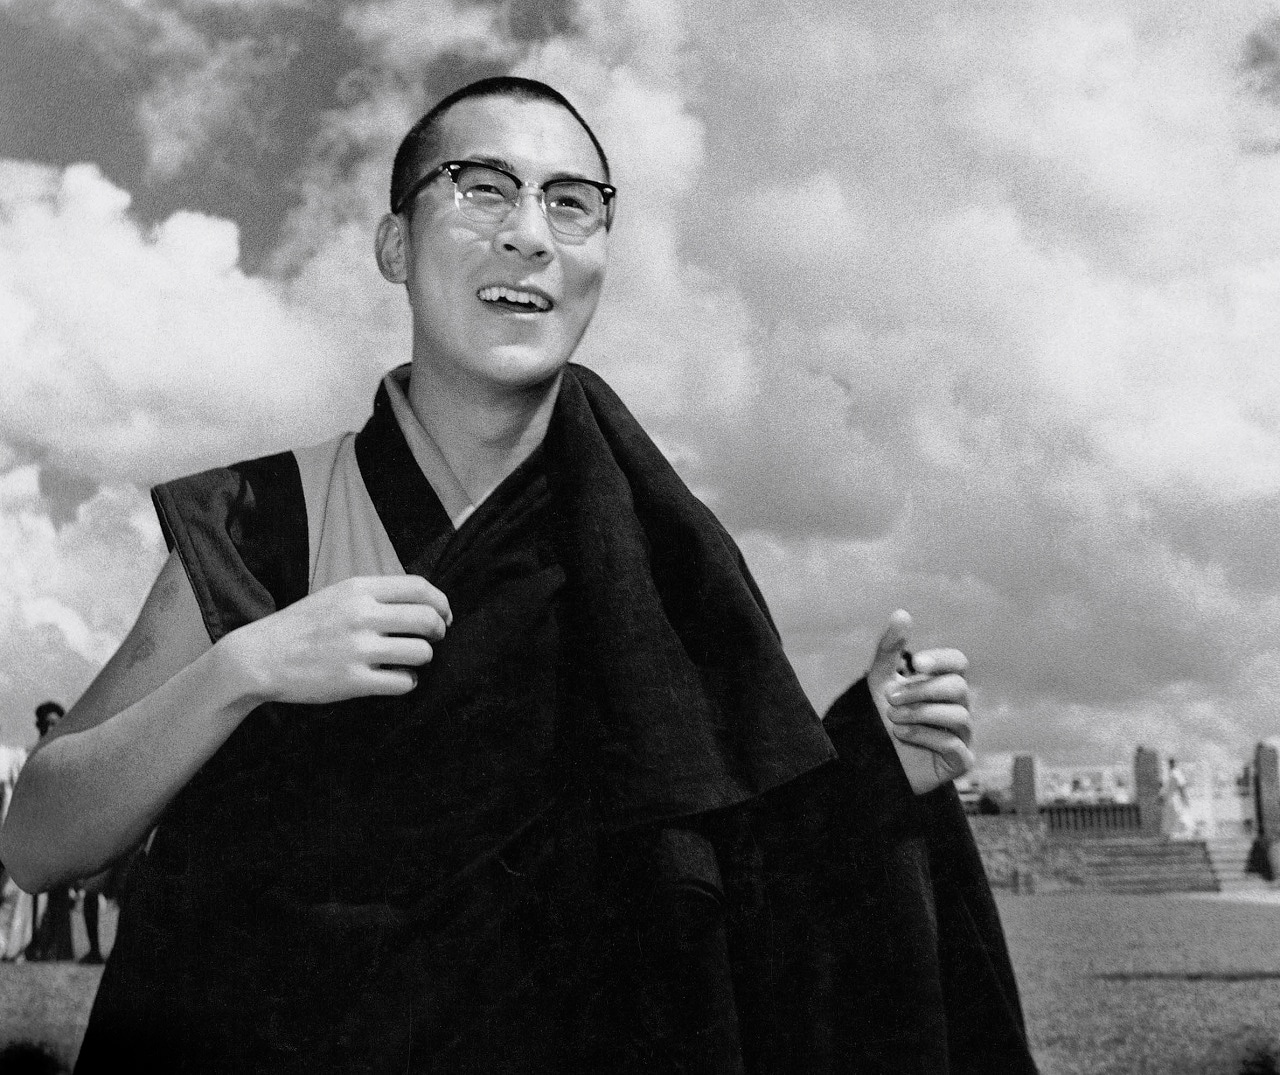 A young Dalai Lama photographed by Homai Vyarawalla (Photo courtesy: Parzor publication ‘India In Focus: Camera Chronicles of Homai Vyarawalla’).